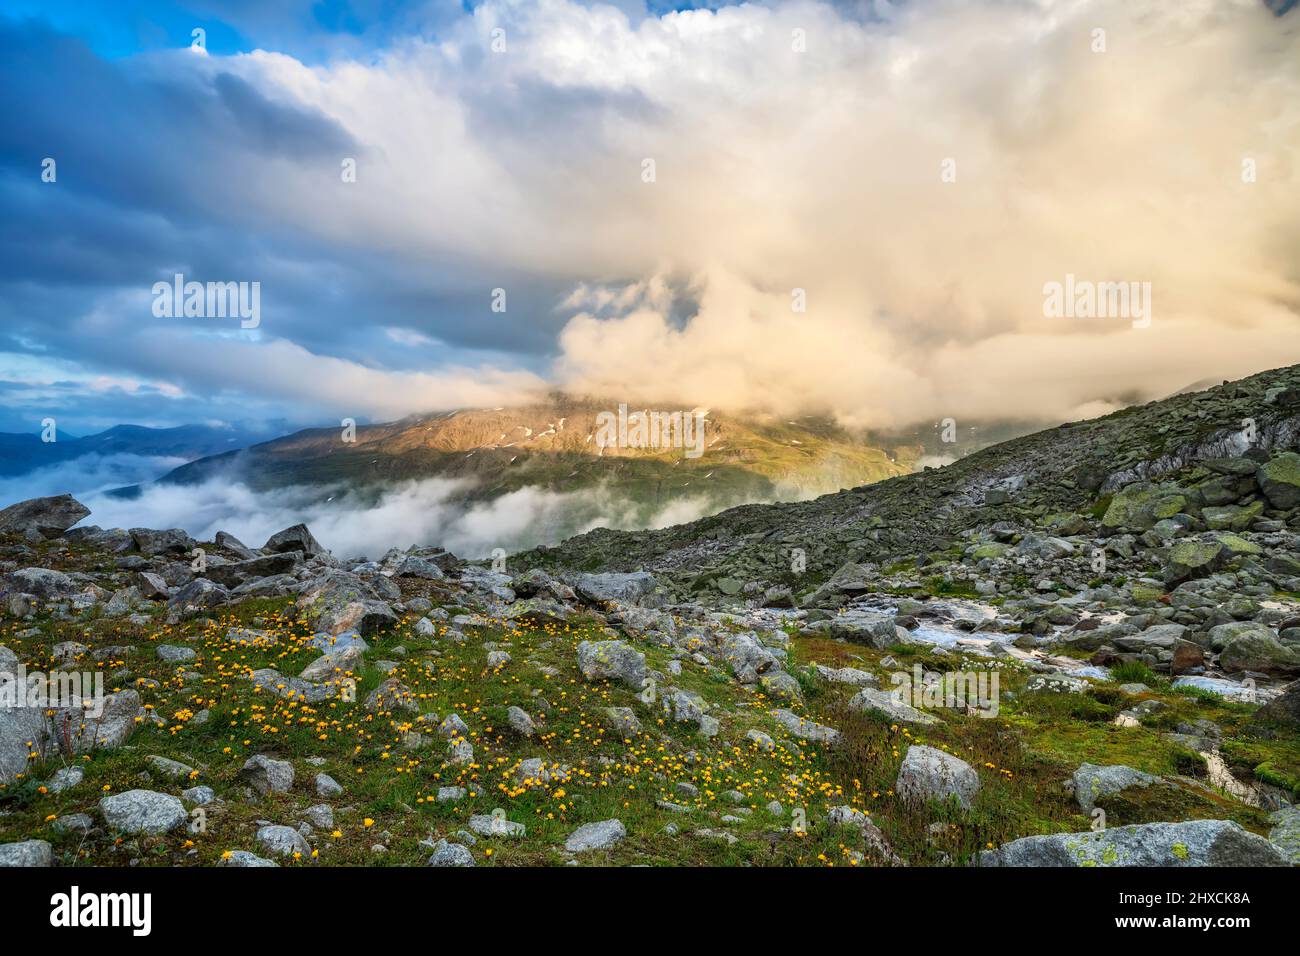 Abendstimmung in alpiner Berglandschaft am Furkapass. Blumen, Stein und Felsen unter dramatischer Wolkenlandschaft. Alpen von Uri, Schweiz, Europa Stockfoto